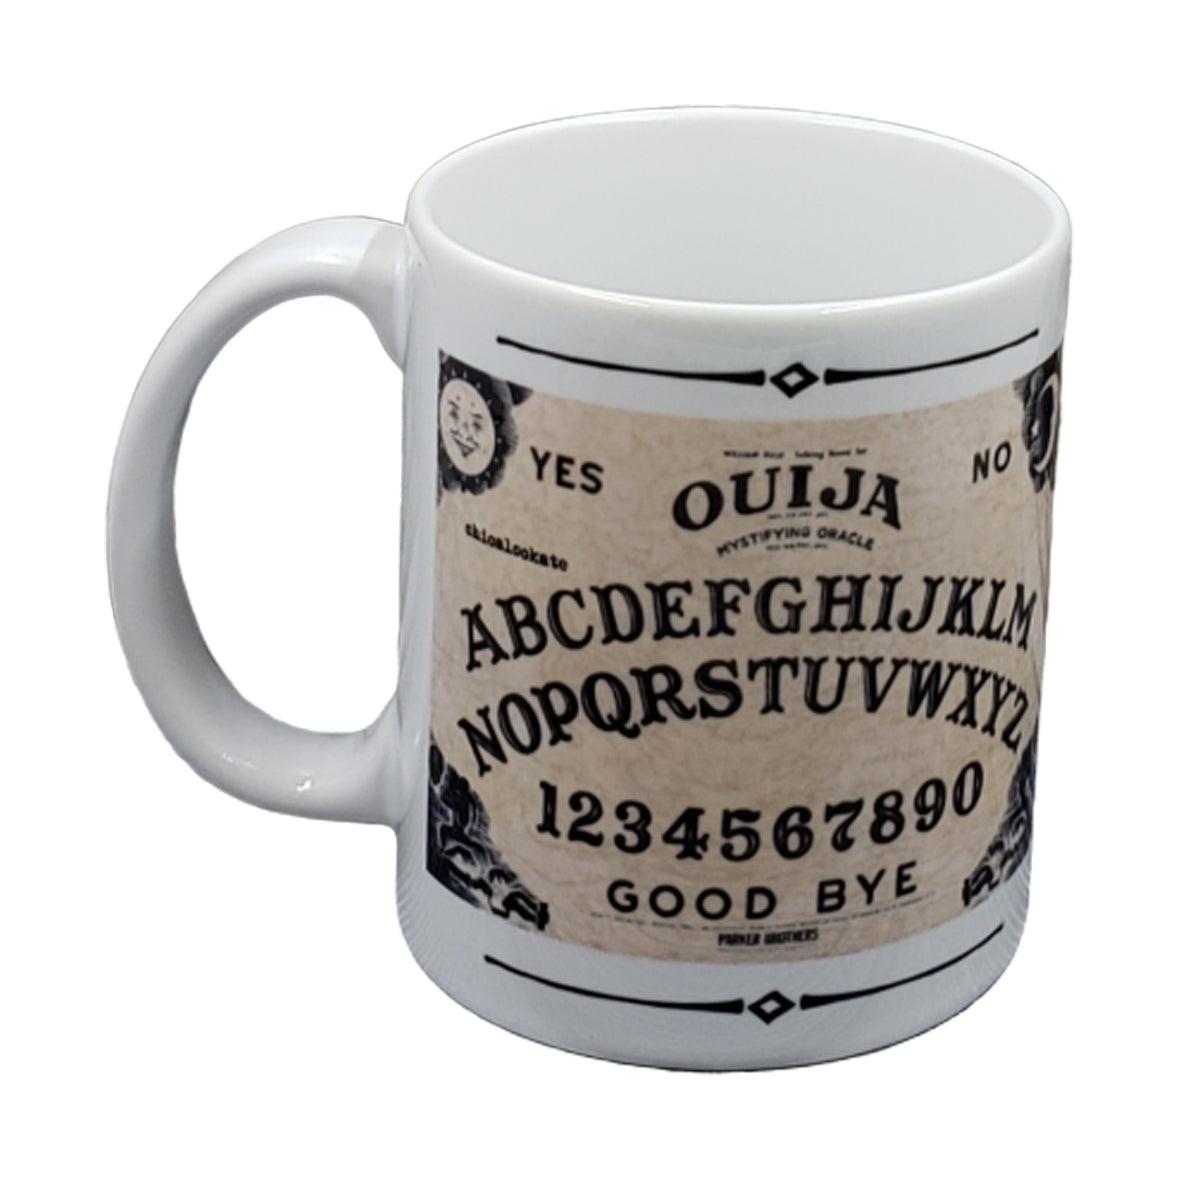 Ouija Board Mug